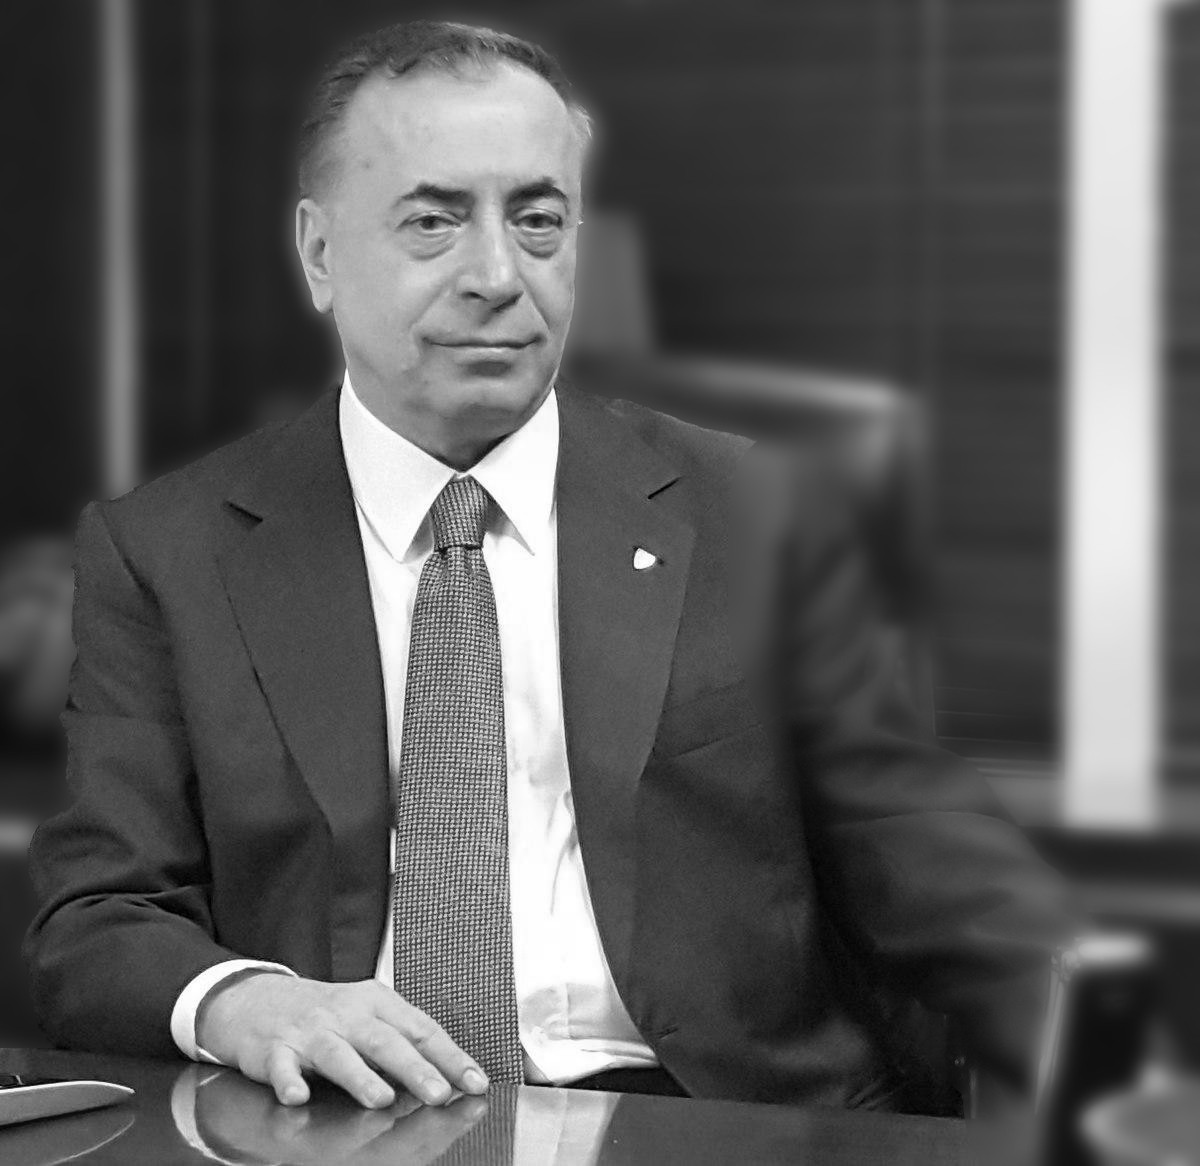 Mustafa Cengiz